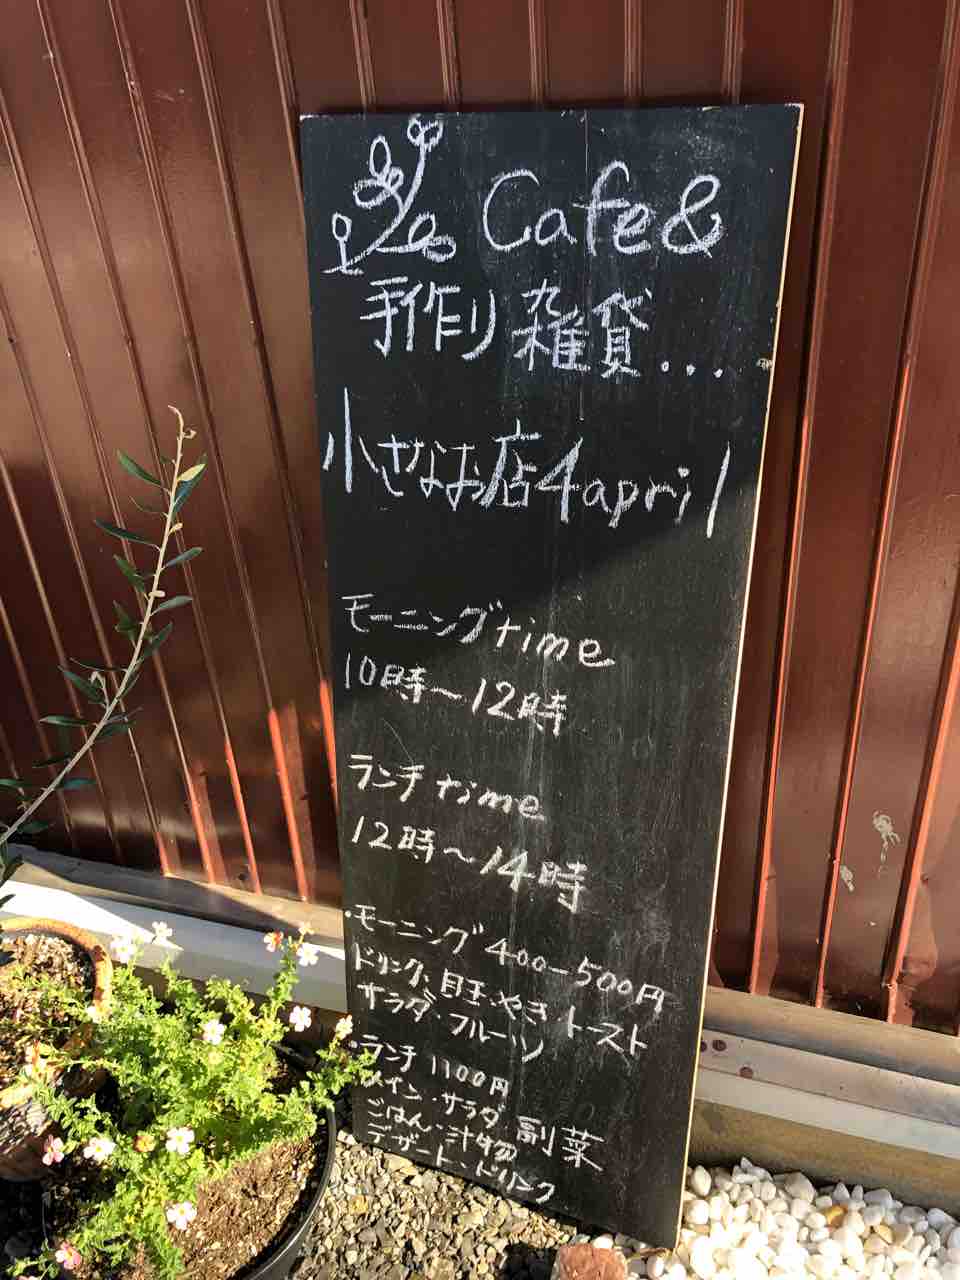 『Cafe & 手作り雑貨 小さなお店4april』店舗入口のとこにある看板